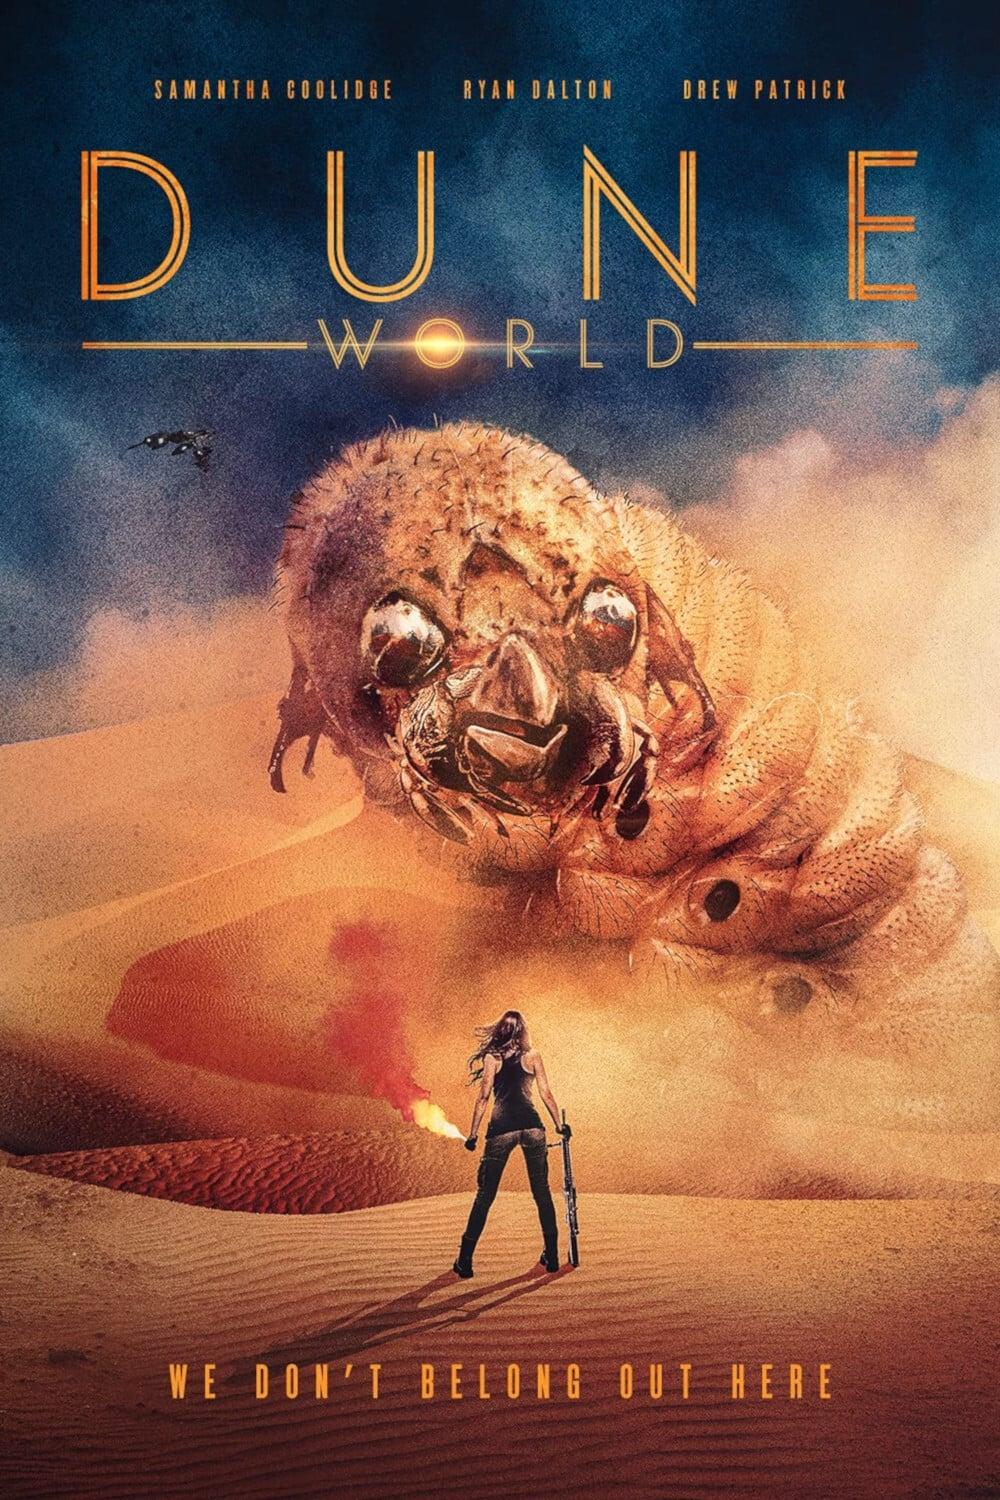 Dune World poster